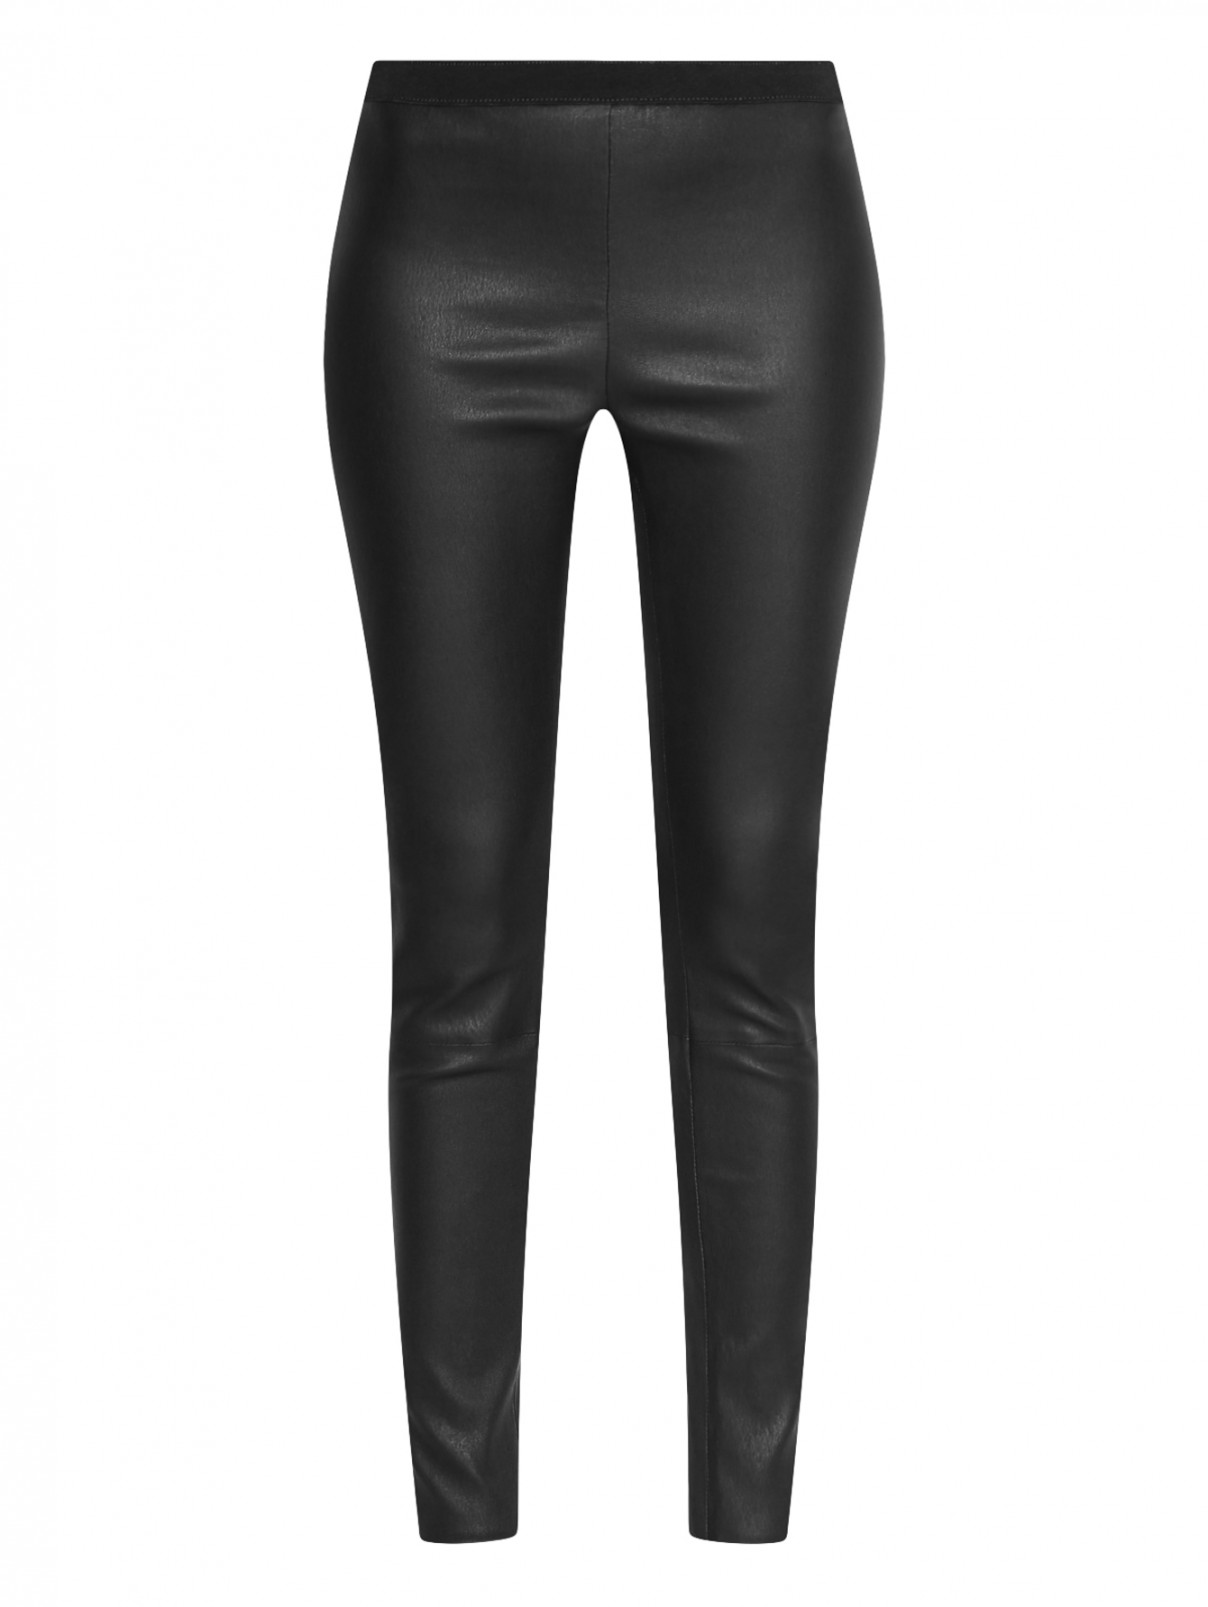 Узкие брюки из кожи DESIGNERS REMIX  –  Общий вид  – Цвет:  Черный